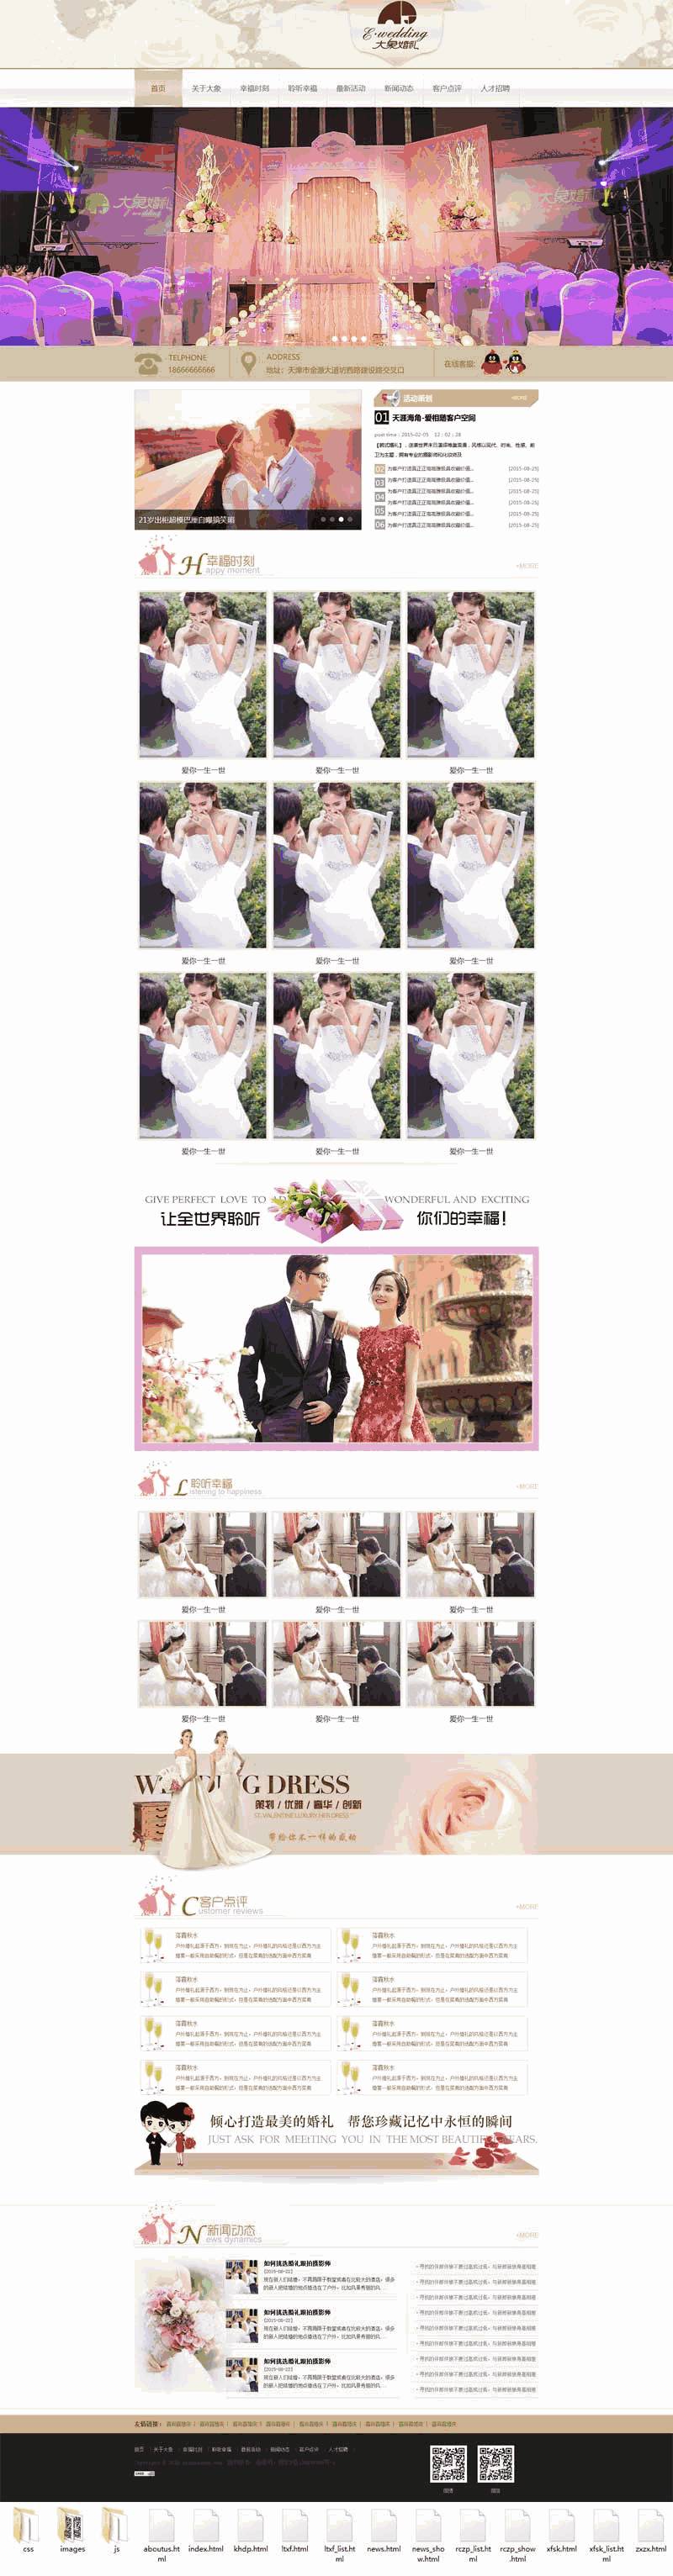 婚庆婚礼策划公司官网自适应WordPress网站模板演示图